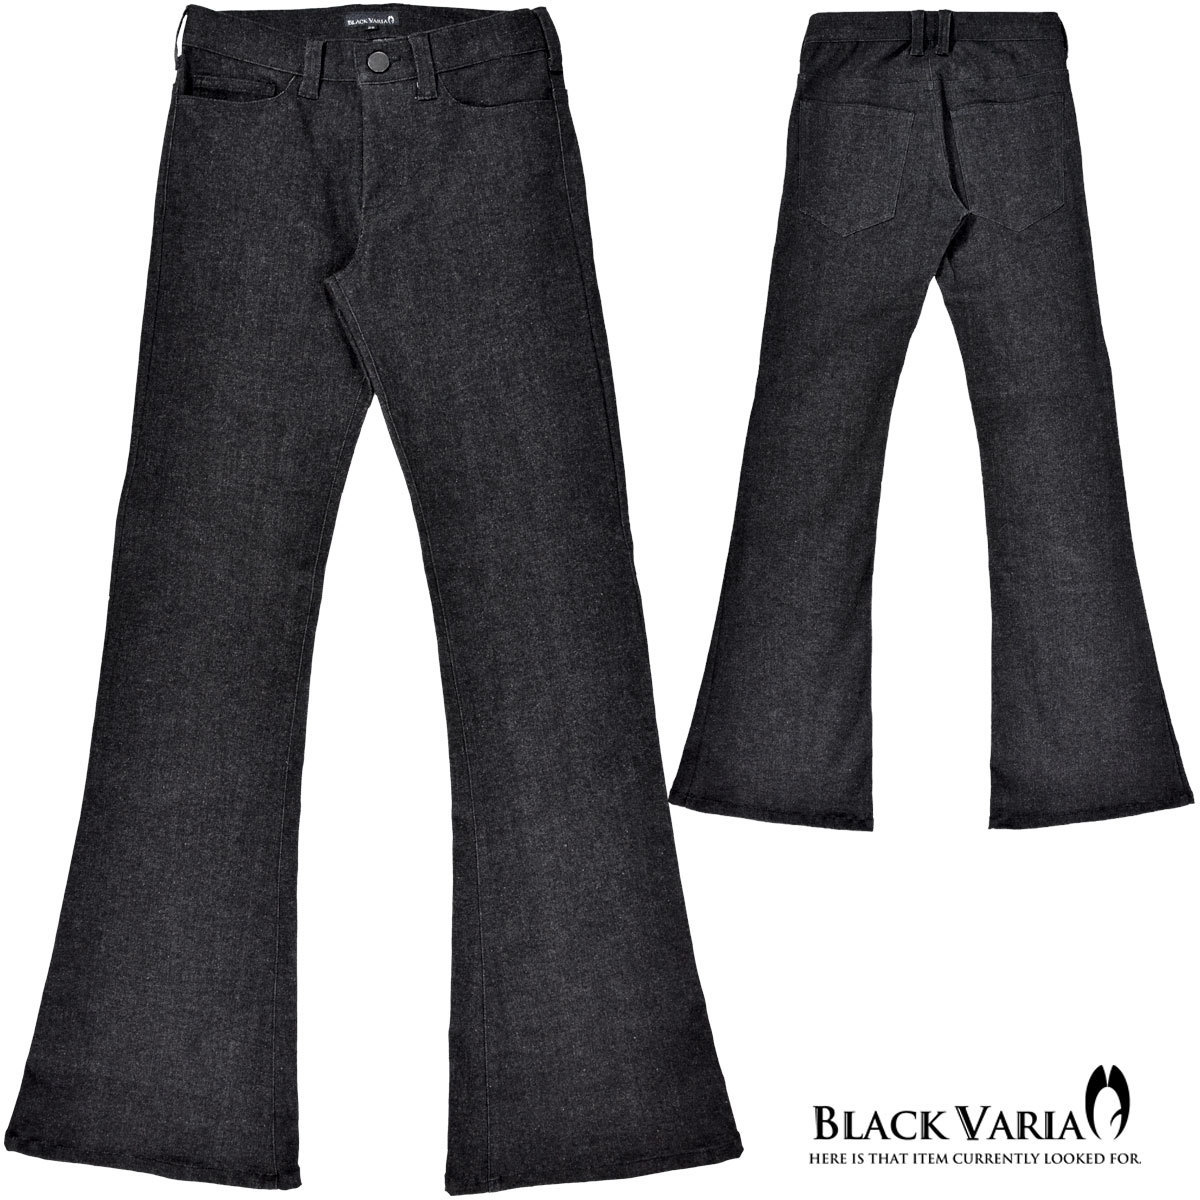 0#162252-bk BLACK VARIA ベルボトム ブーツカット ジーンズ 裾広 デニム 5ポケット パンツ メンズ (ブラック黒) M30 モード 股上浅め_画像3